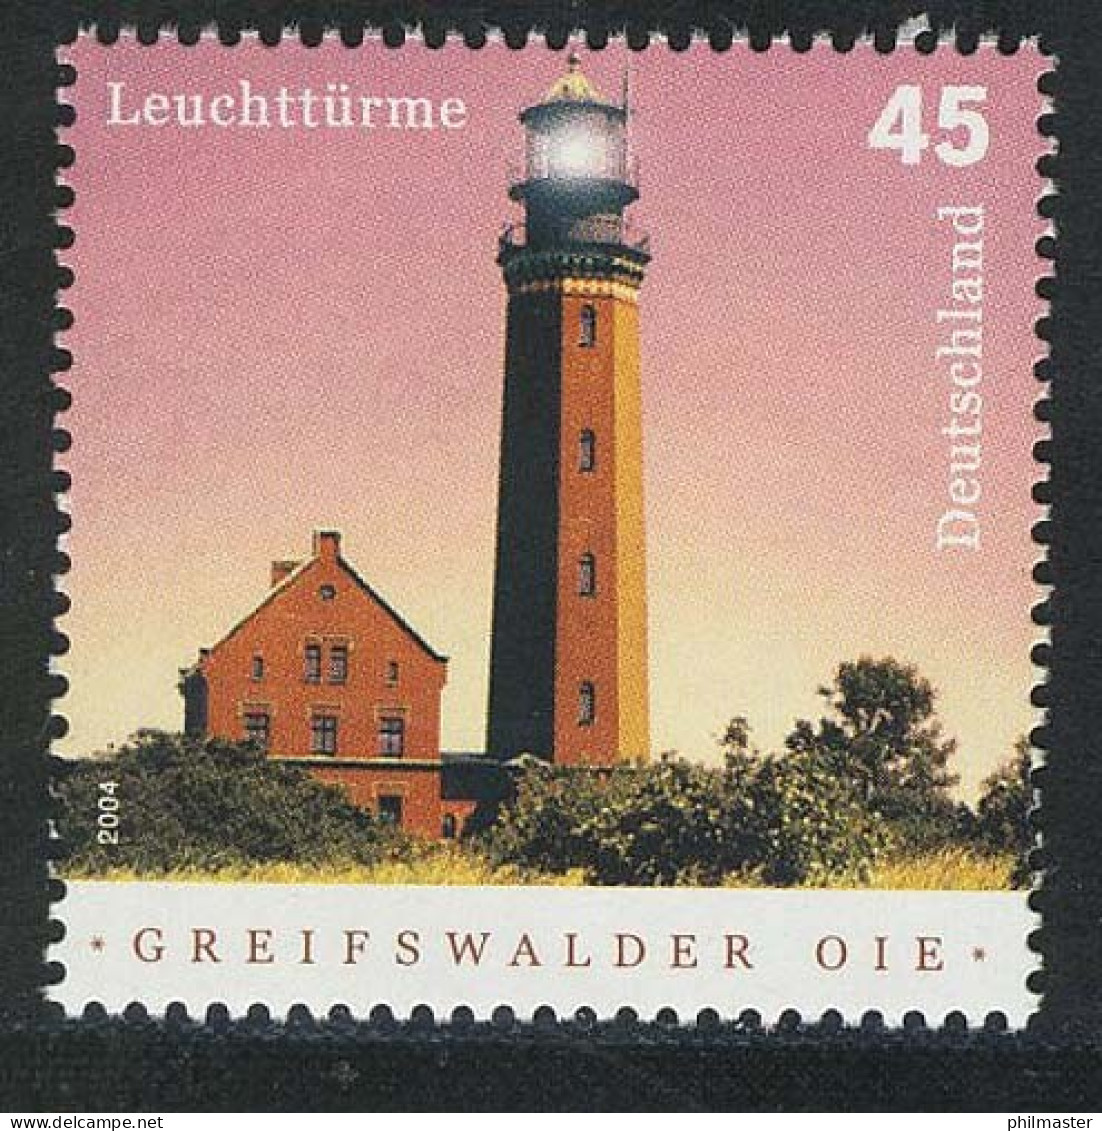 2409 Leuchtturm Greifswalder Oie, 10 Einzelmarken, Alle Postfrisch ** / MNH - Nuovi